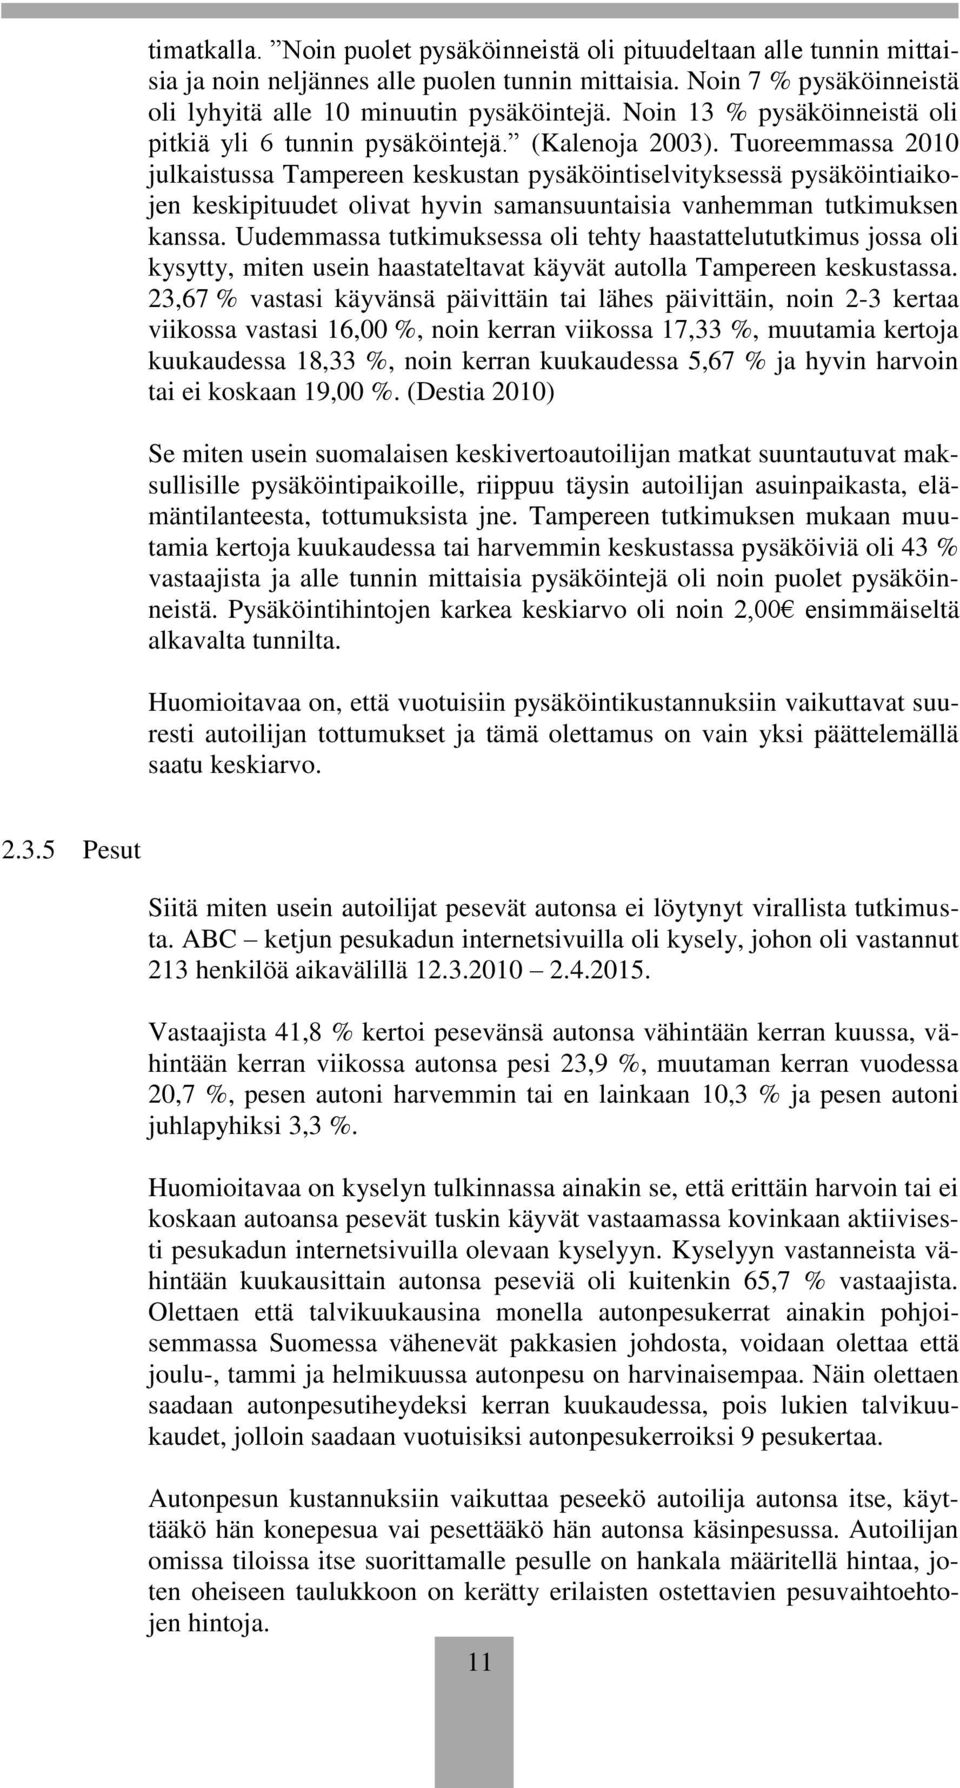 Tuoreemmassa 2010 julkaistussa Tampereen keskustan pysäköintiselvityksessä pysäköintiaikojen keskipituudet olivat hyvin samansuuntaisia vanhemman tutkimuksen kanssa.